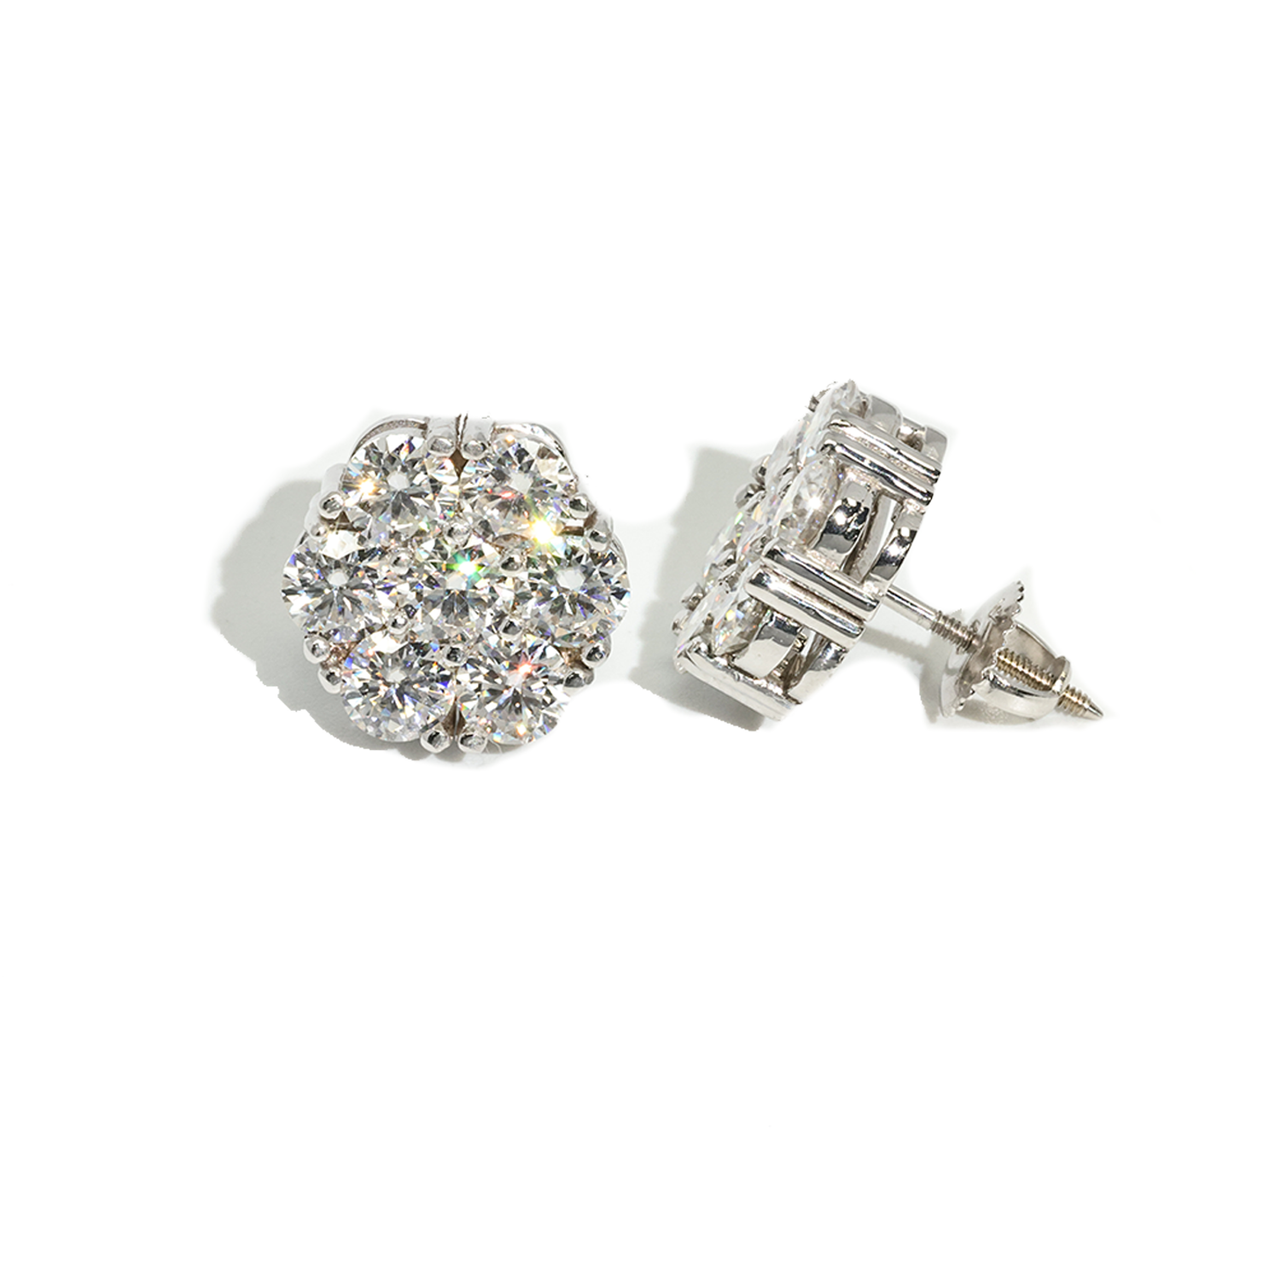 White 14k White Gold Diamond Cluster Earrings 2.1 ctw CVD